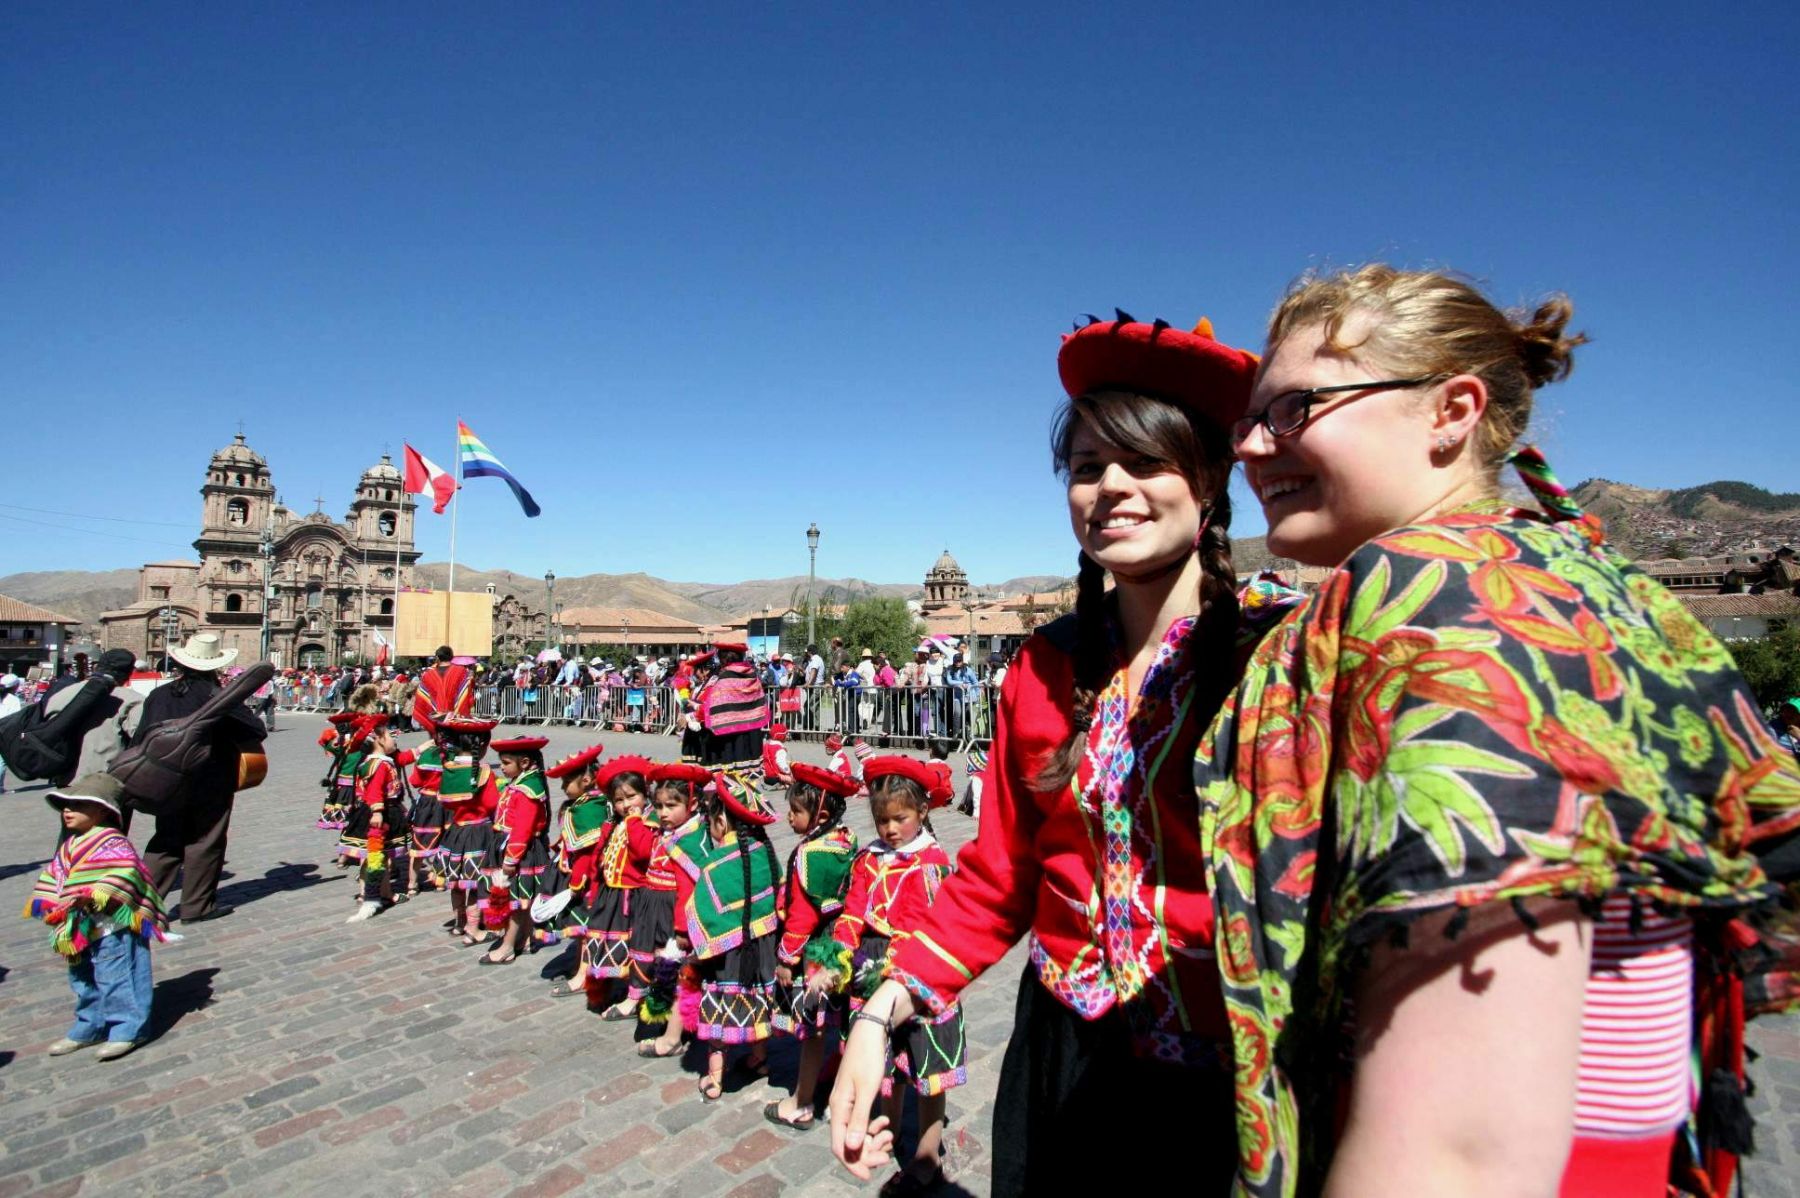 El Mundial Rusia 2018 beneficiará a largo plazo el flujo turístico a Cusco. ANDINA/Percy Hurtado Santillán